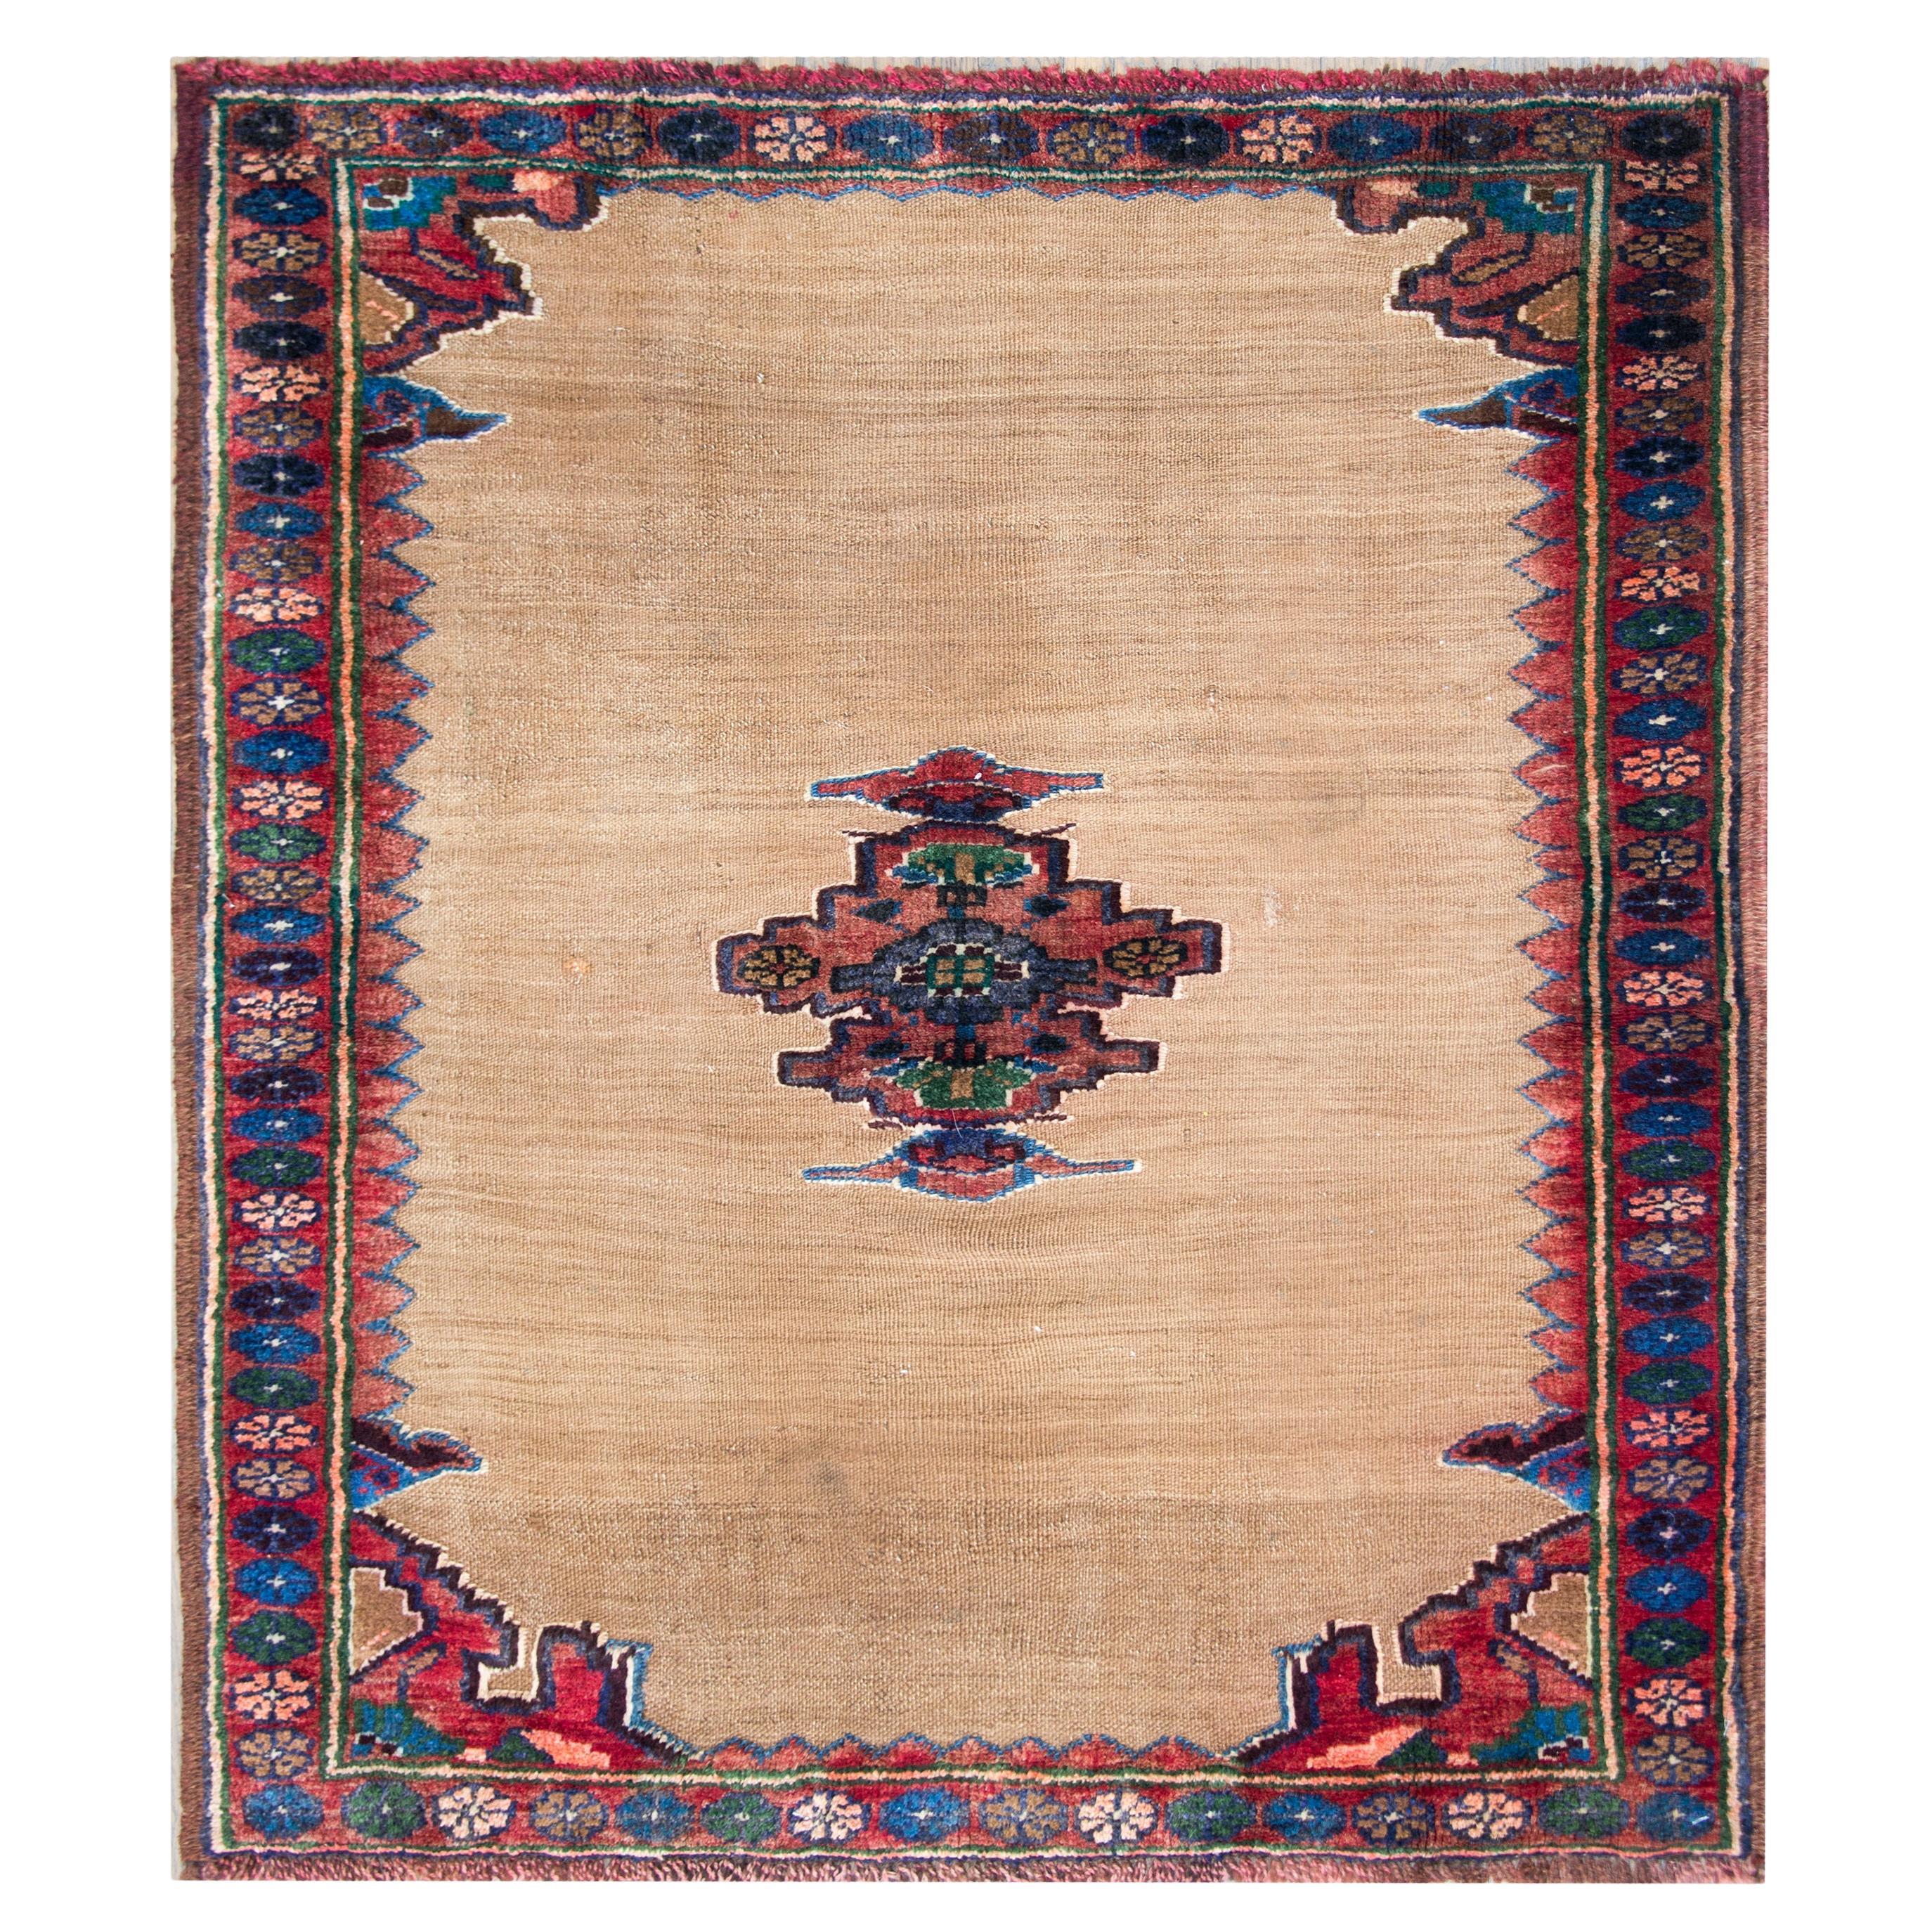 Persischer Afshar Sofreh-Teppich aus dem frühen 20. Jahrhundert